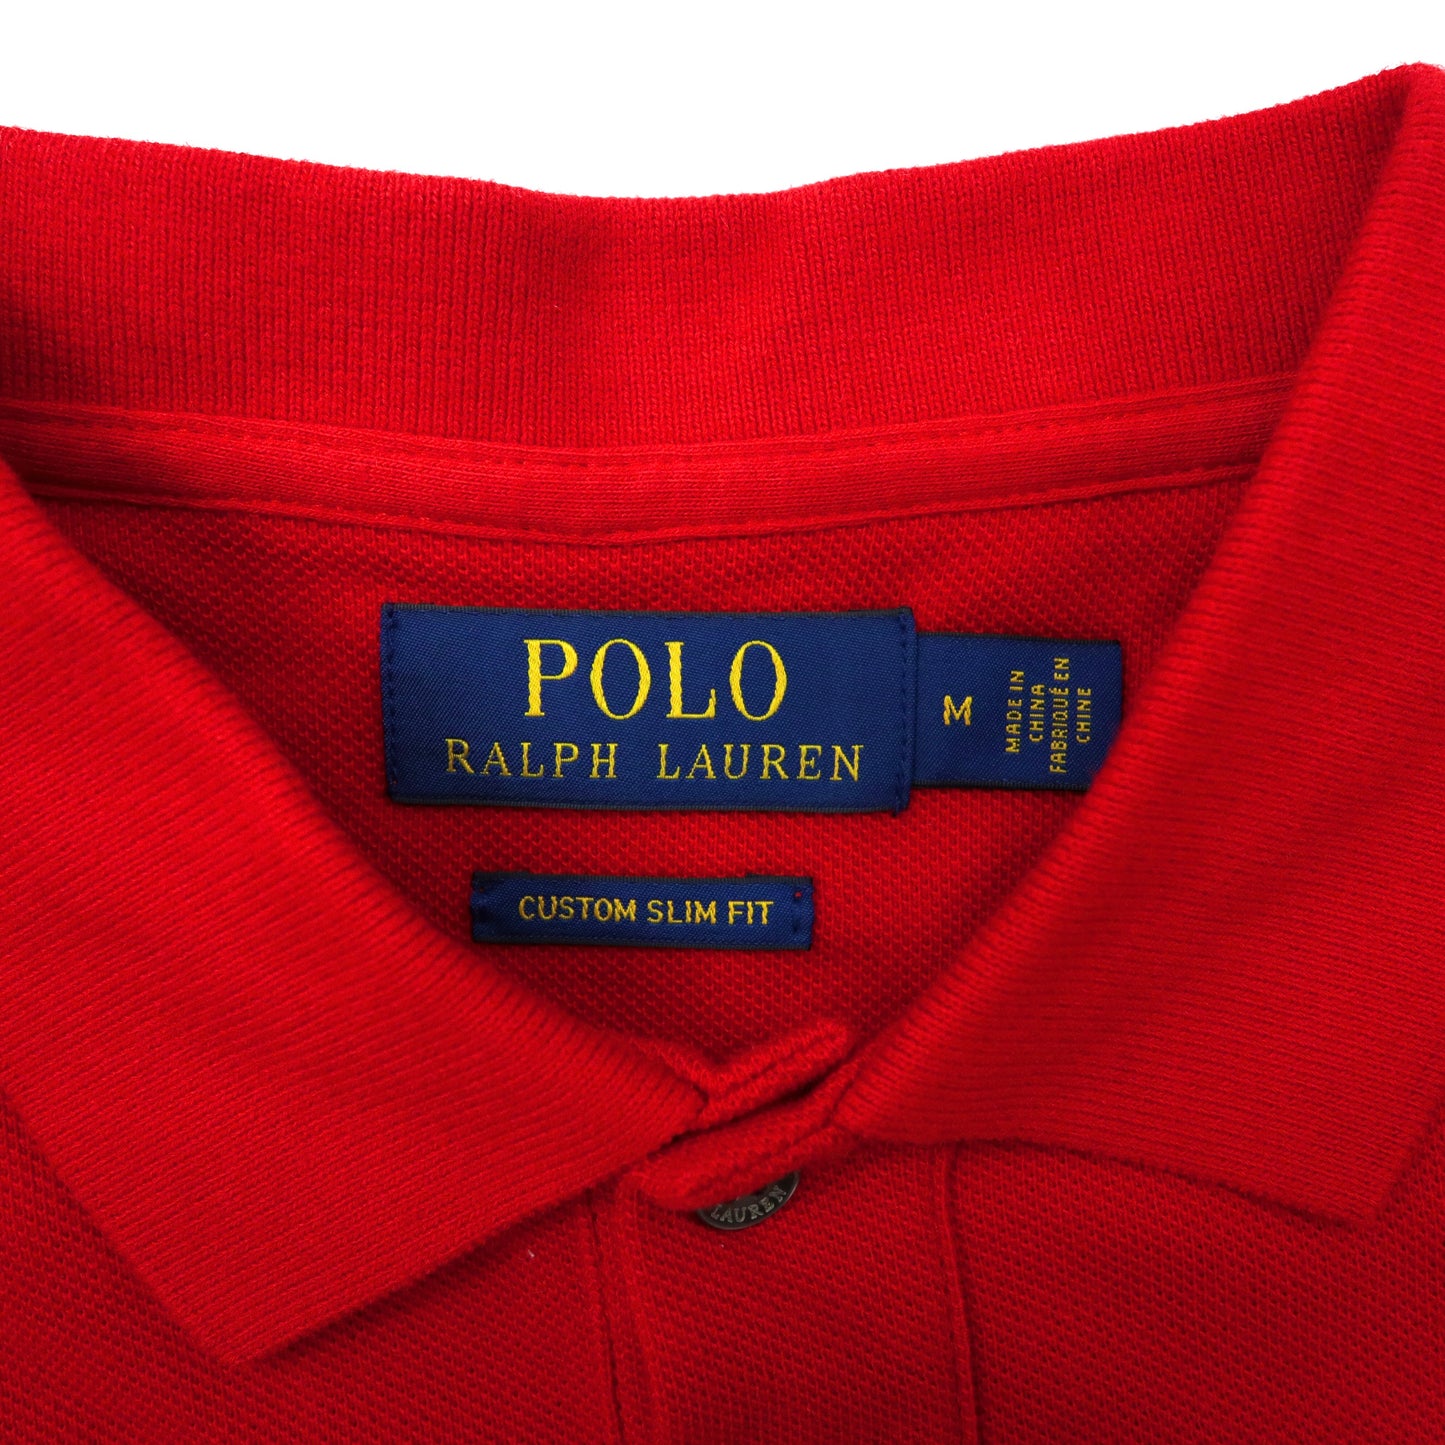 POLO RALPH LAUREN ポロシャツ M レッド コットン ポニー刺繍 ナンバリング エンブレム CUSTOM SLIM FIT